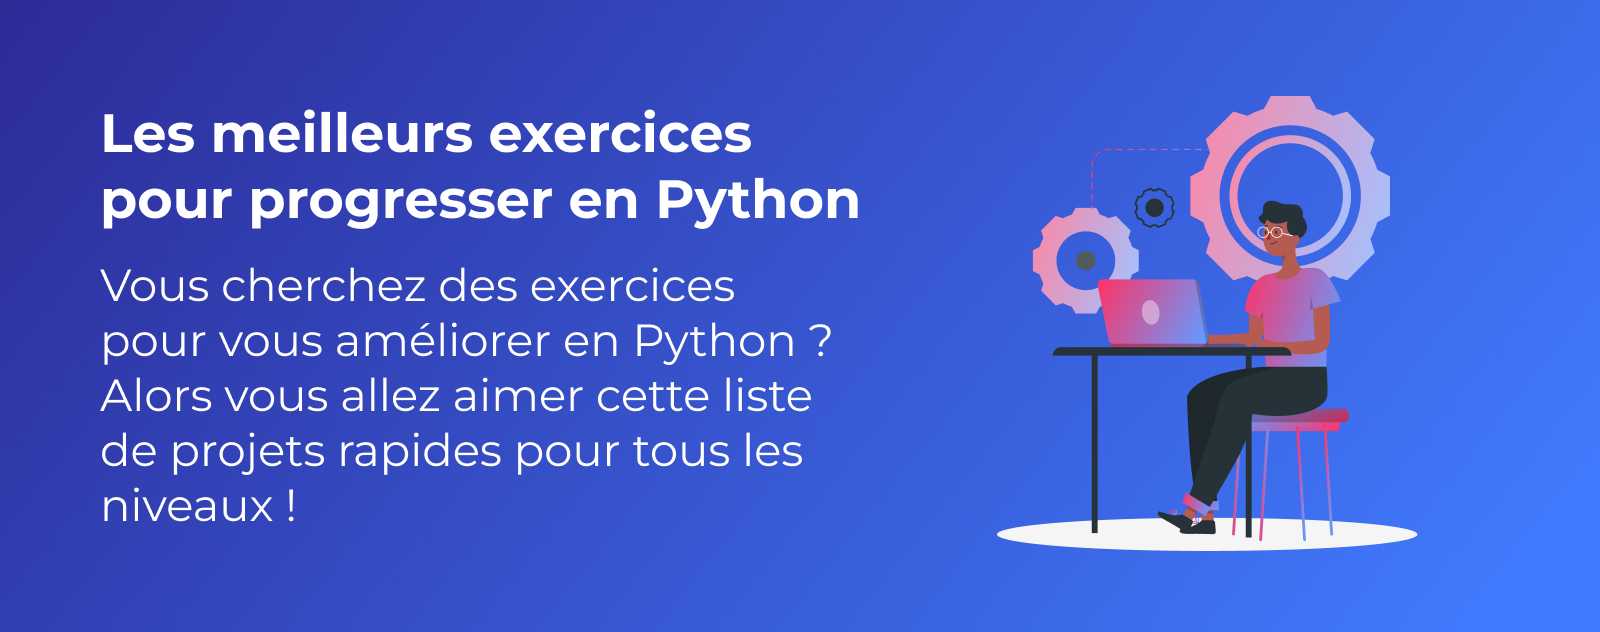 19 exercices en Python !